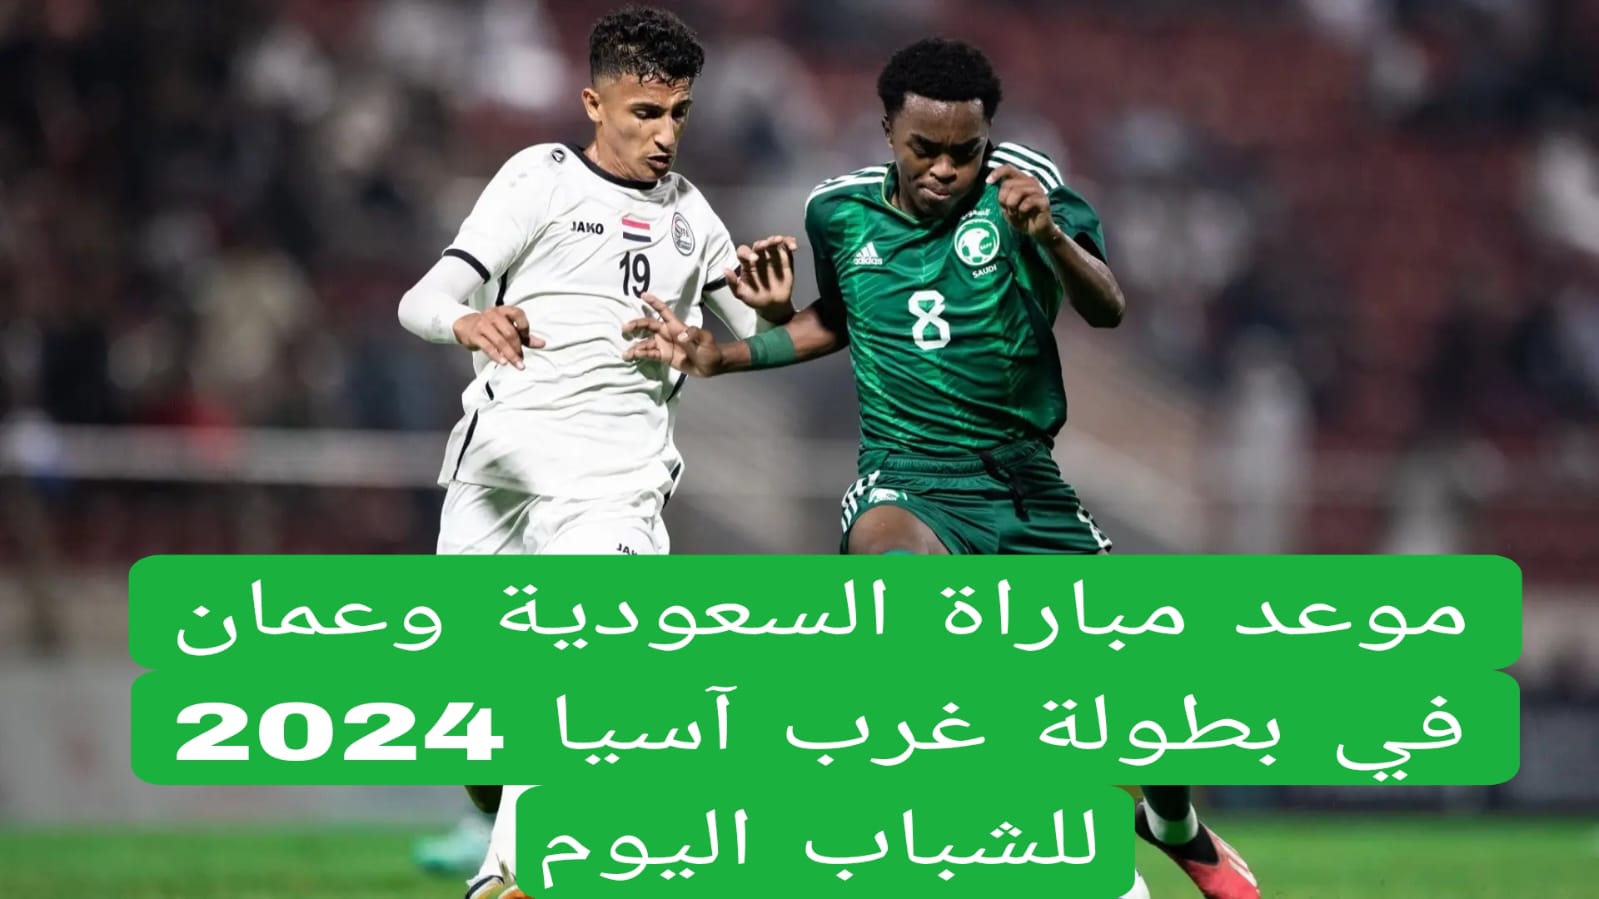 موعد مباراة السعودية وعمان في بطولة غرب آسيا 2024 للشباب اليوم